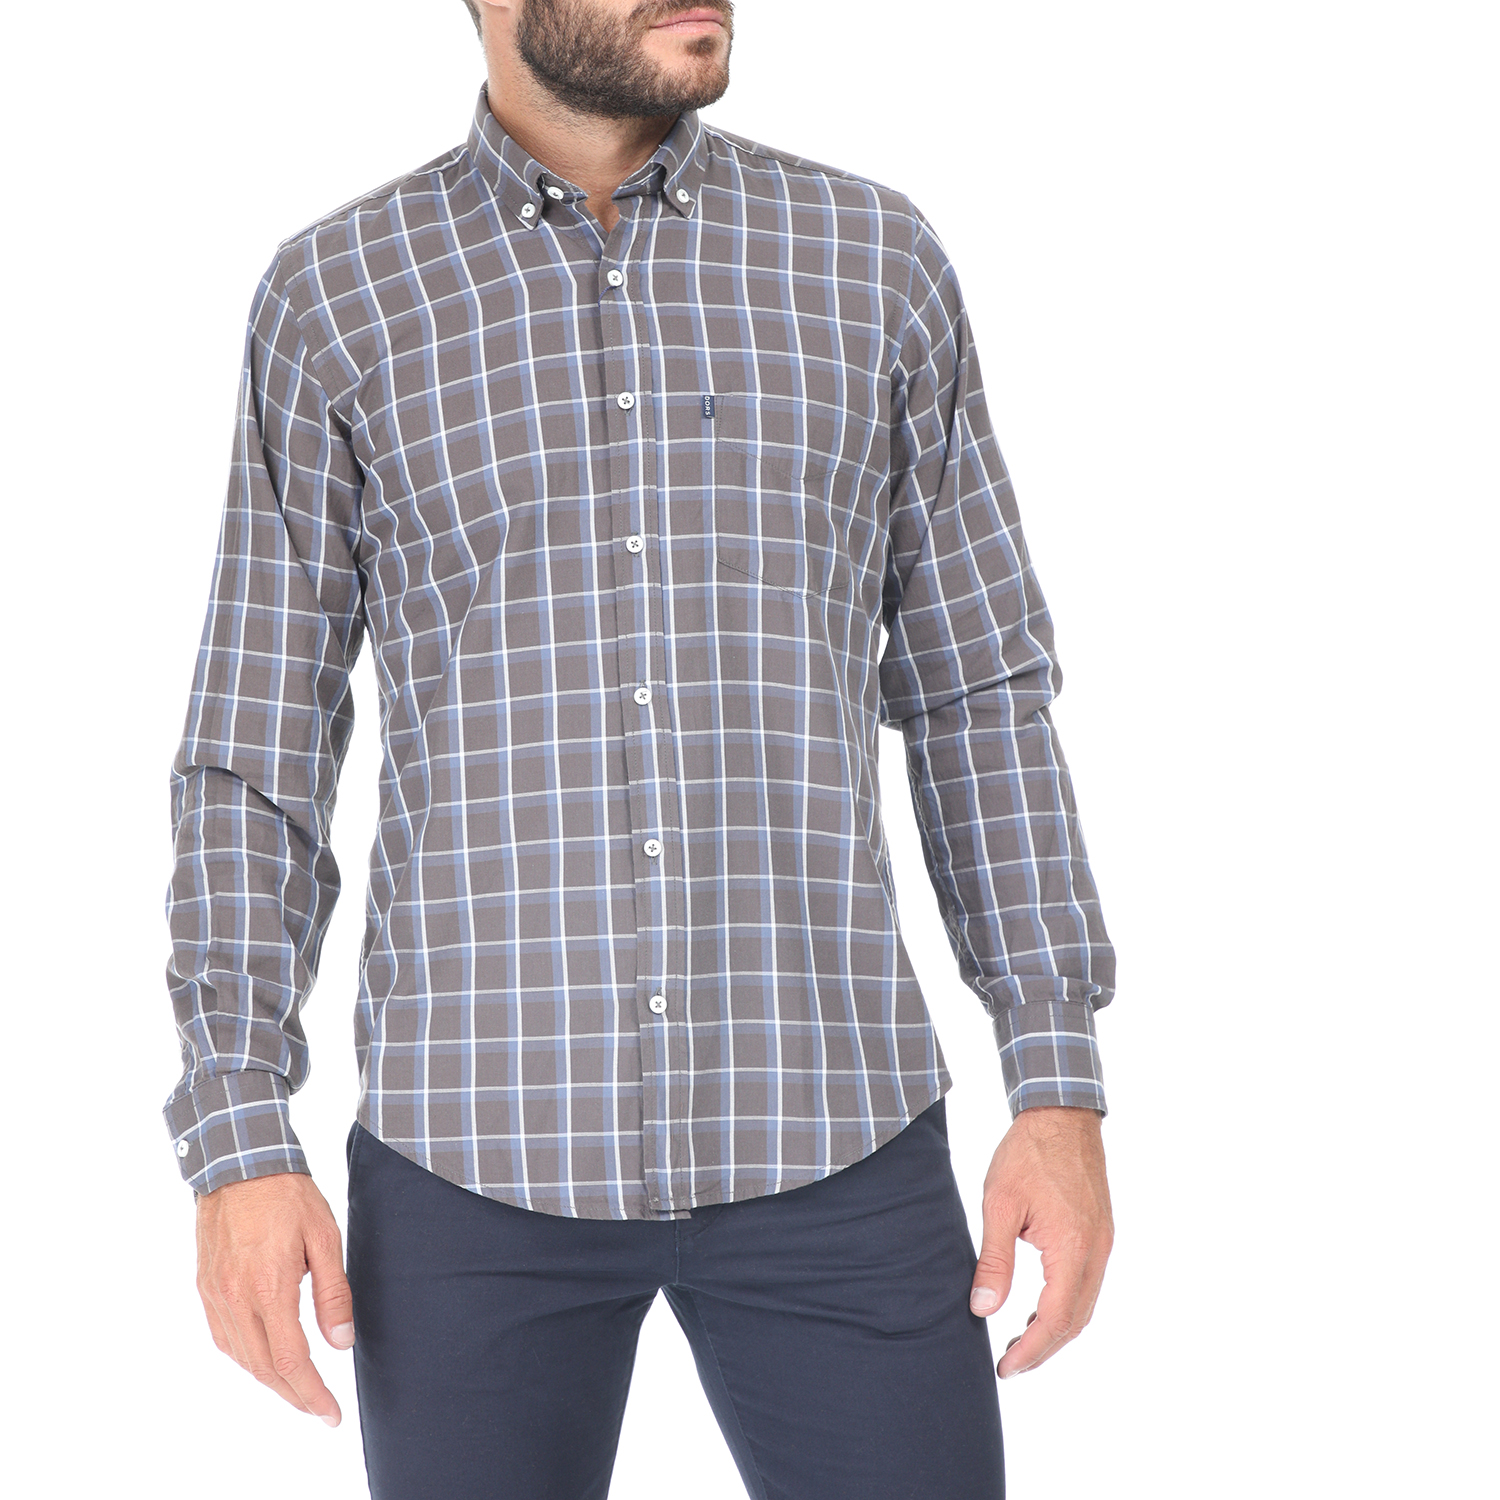 Ανδρικά/Ρούχα/Πουκάμισα/Μακρυμάνικα DORS - Ανδρικό πουκάμισο DORS καφέ-γαλάζιο